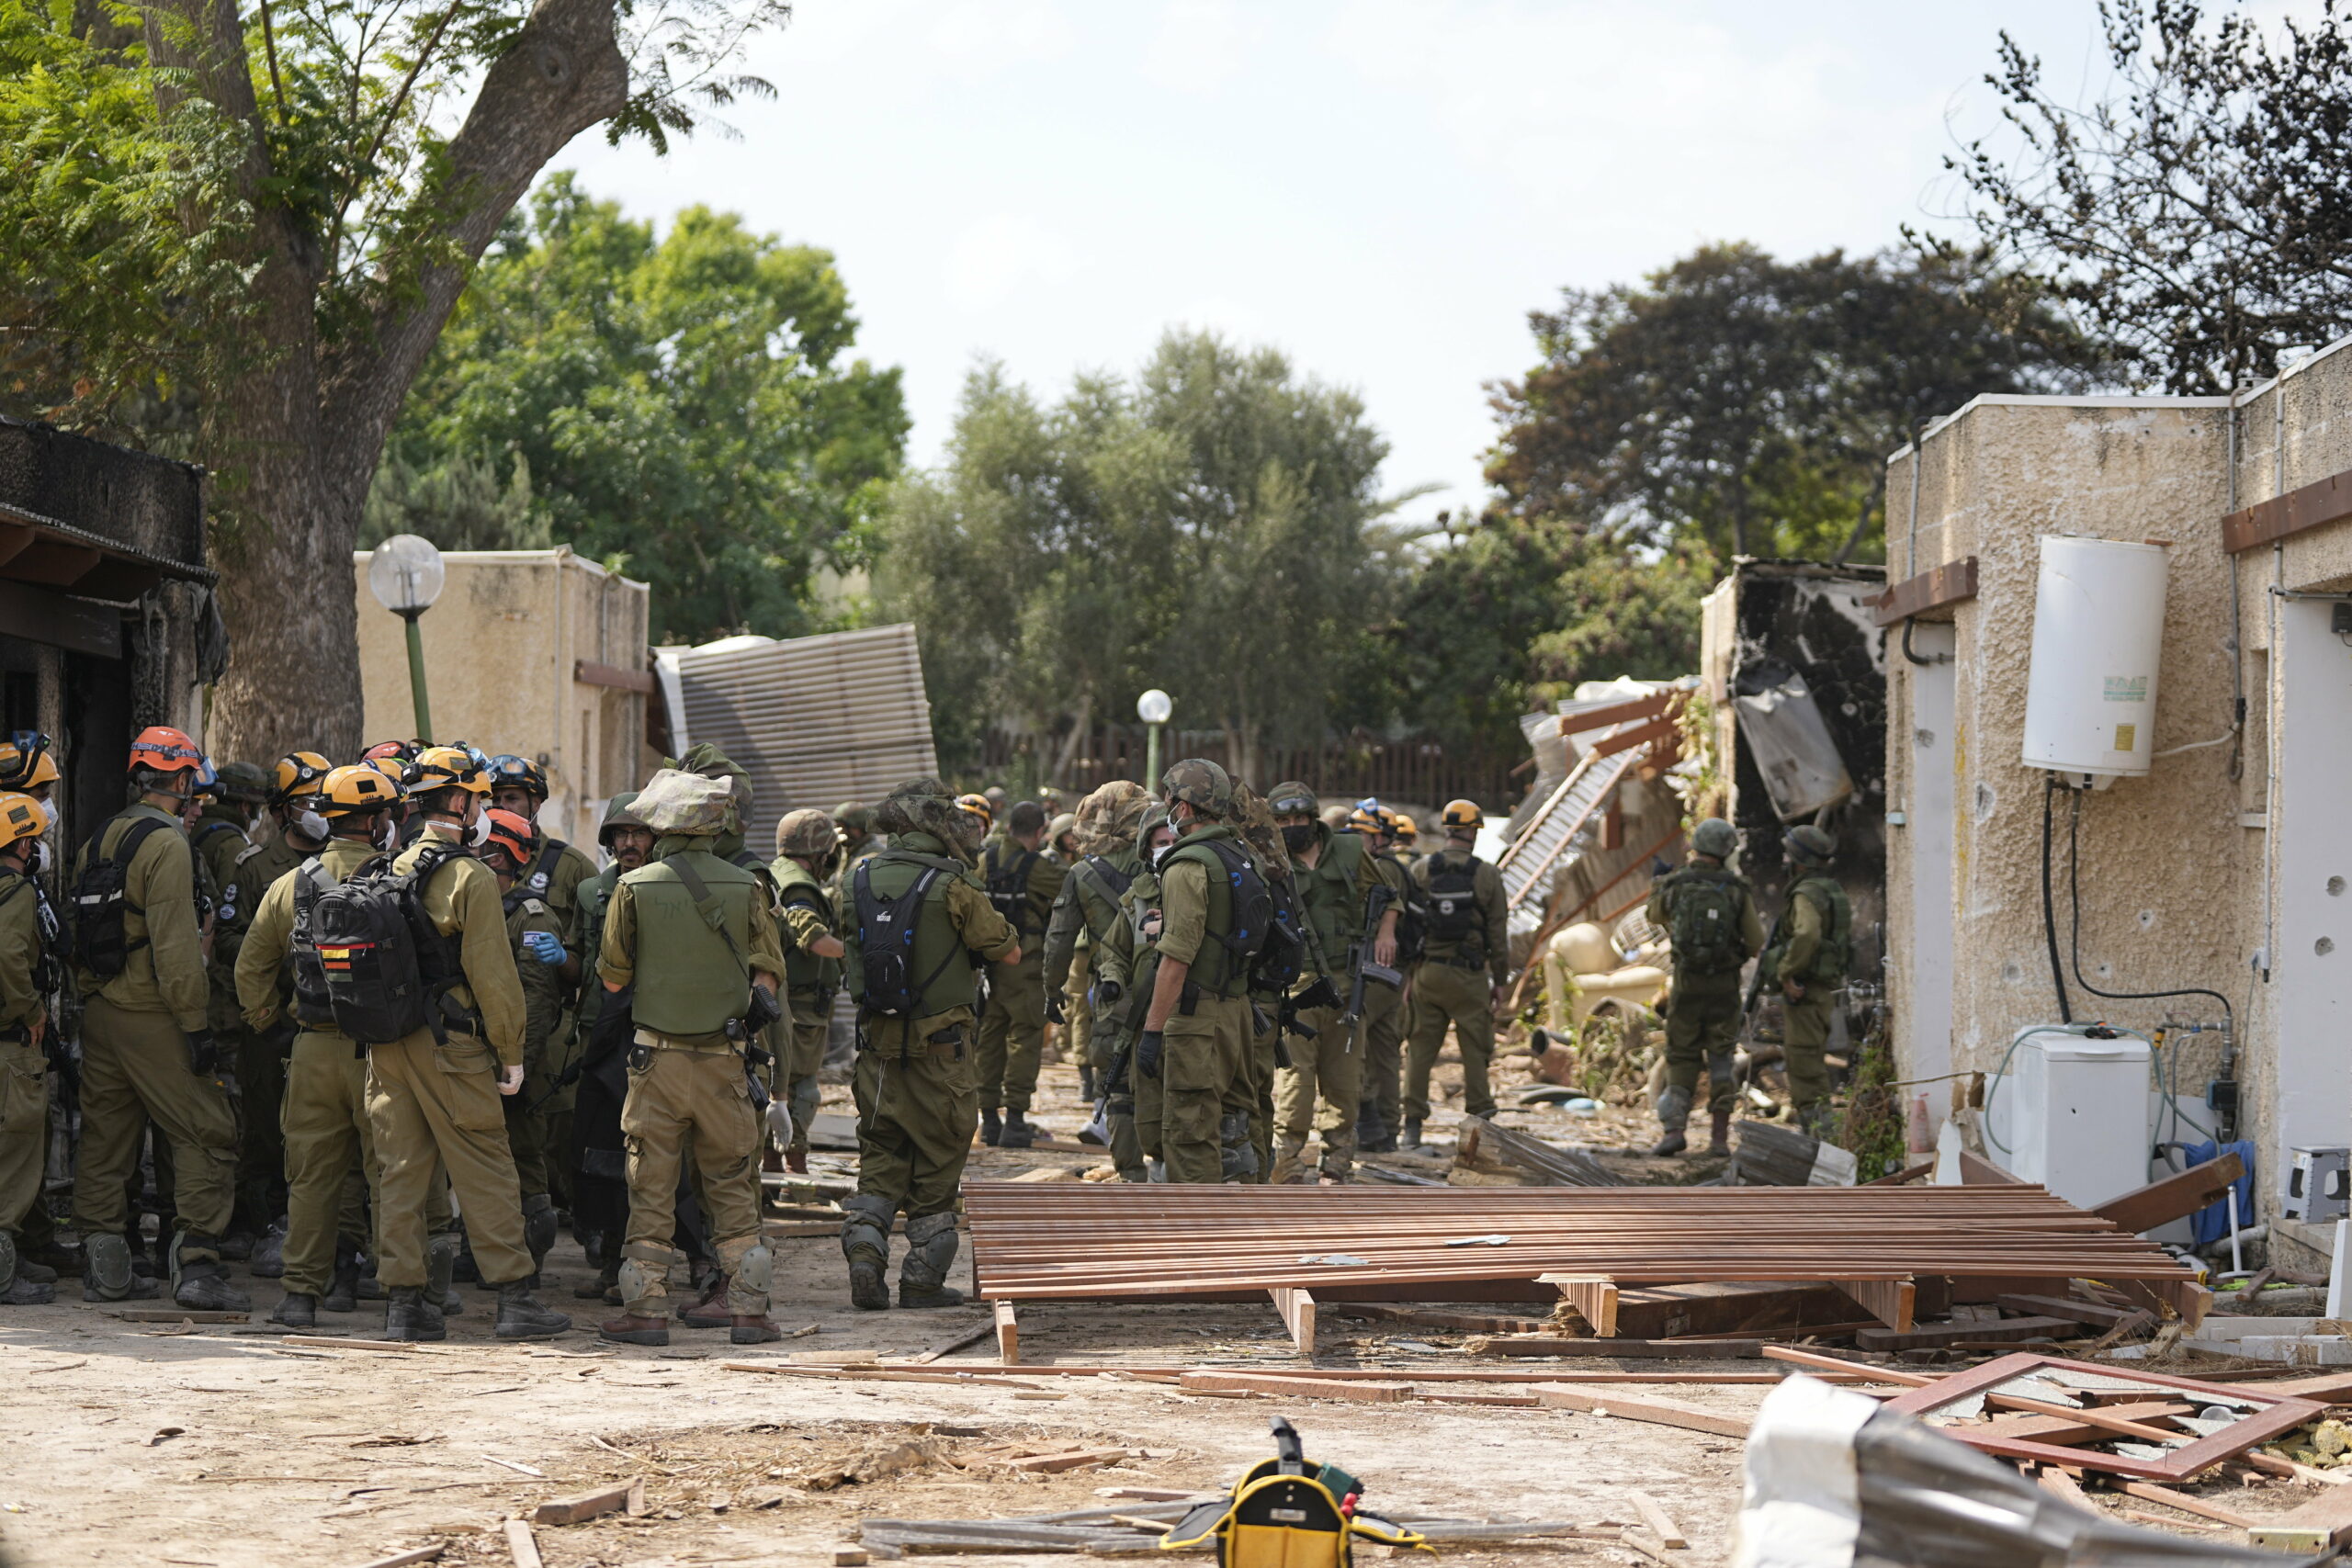 Pokolgépek, kézigránátok, Kalasnyikovok és más fegyverek maradtak a terroristák után –  azt tervezték, hogy több száz Hamász-tag több napig harcol és ejt túszokat Izraelben